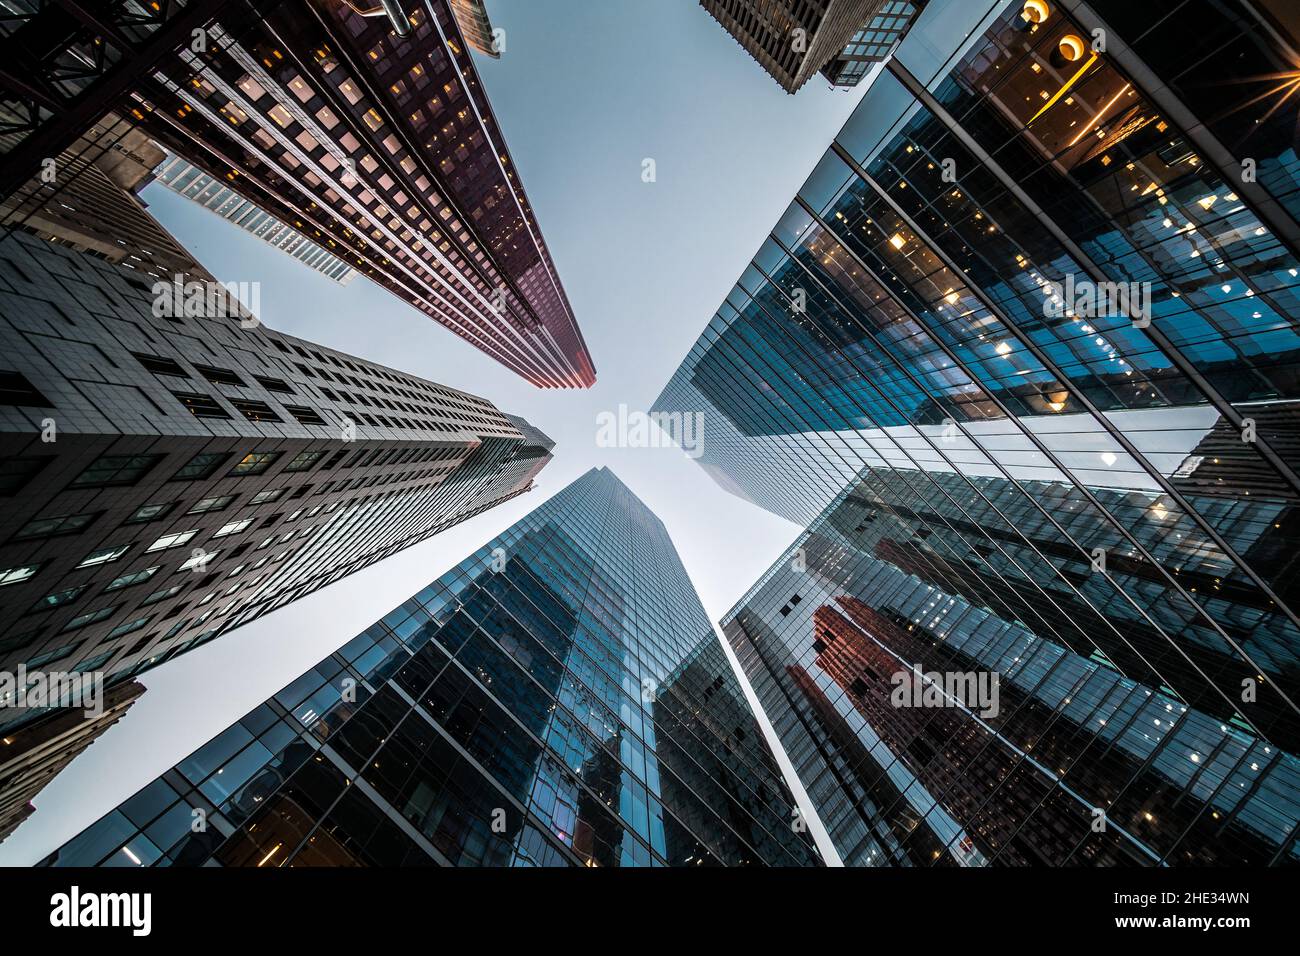 Business- und Finanzkonzept, Blick auf die Bürohochhaus-Architektur im Finanzviertel einer modernen Metropole. Stockfoto